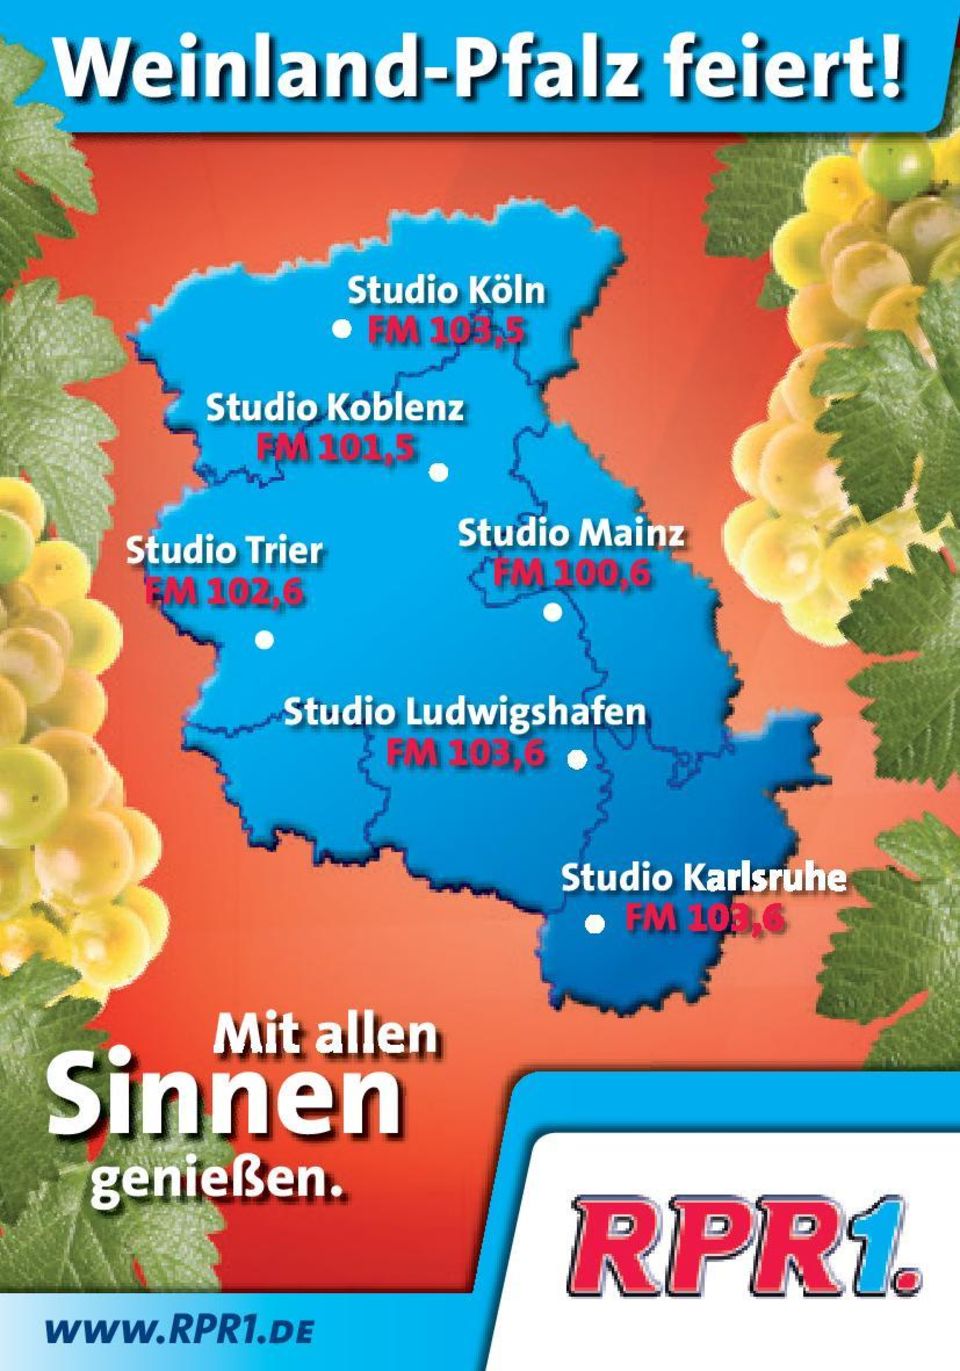 Trier FM 102,6 Studio Mainz FM 100,6 Studio